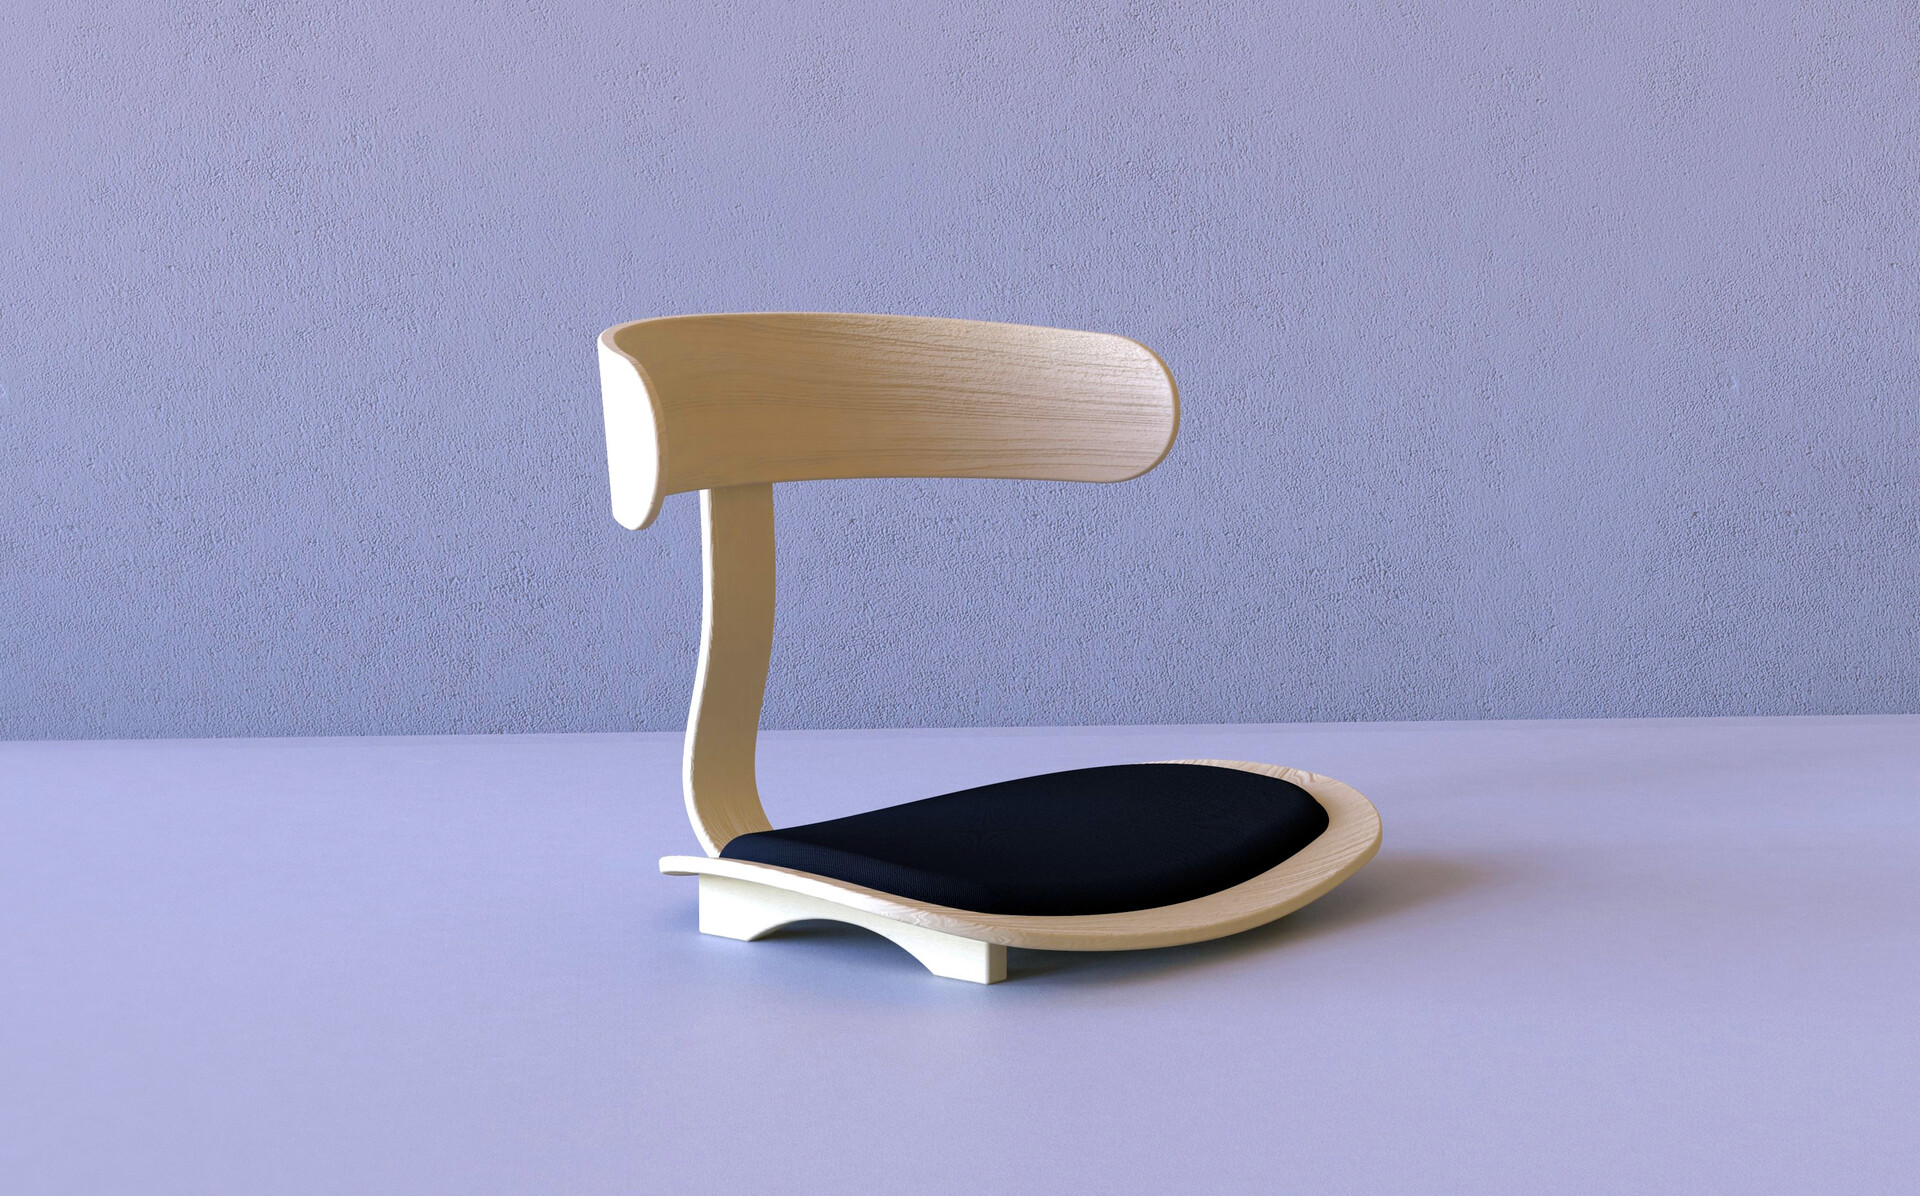 Ayoub Zgaren - Chaise de sol - Concept design